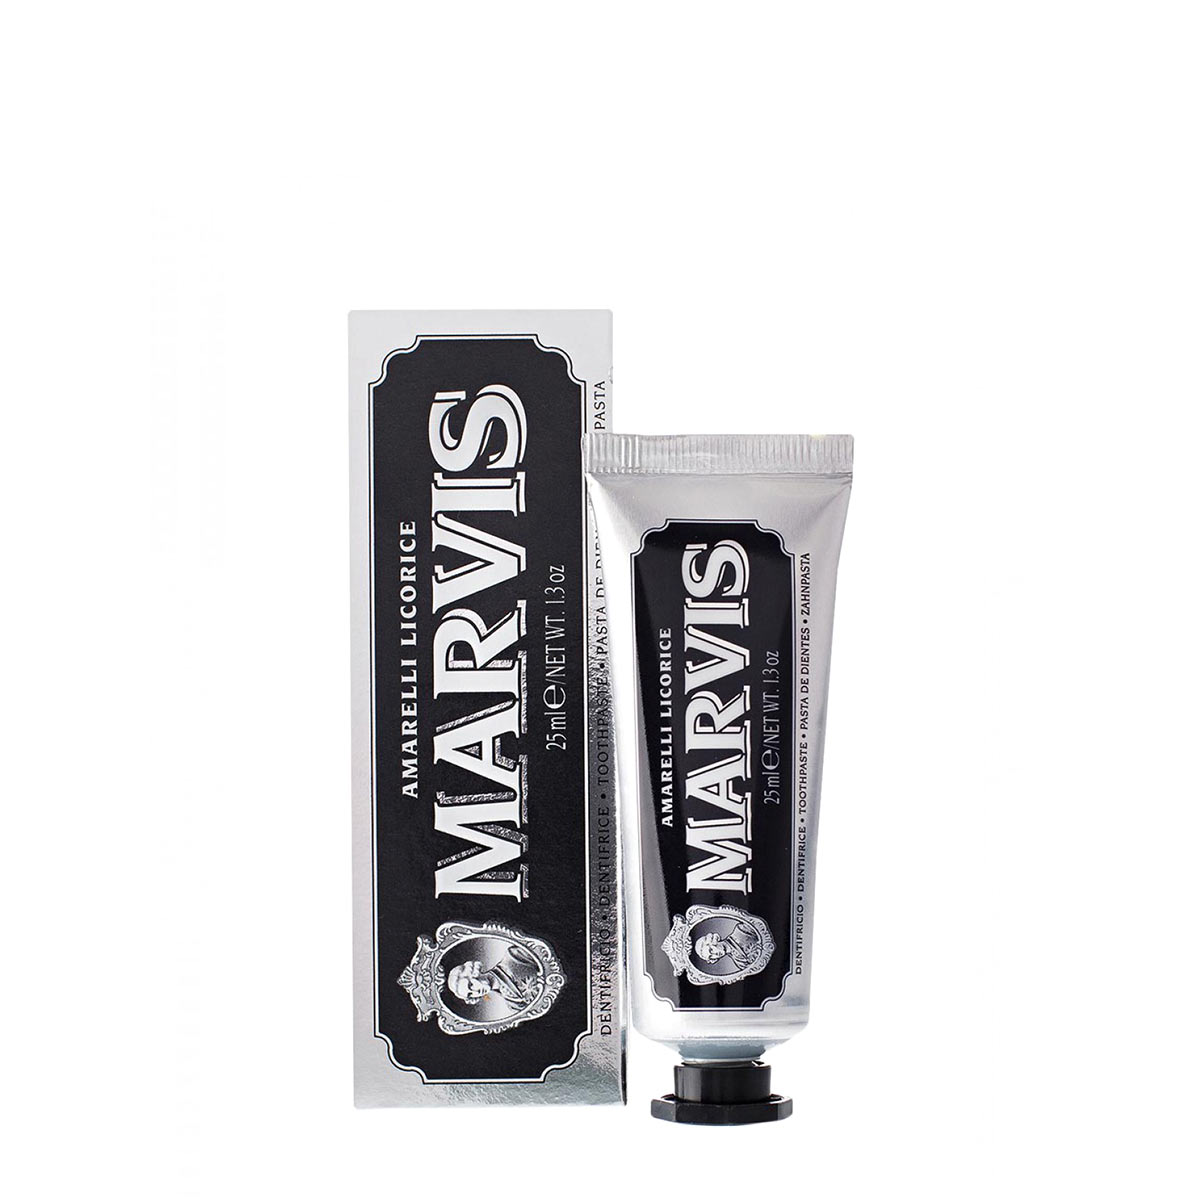 Зубная паста Marvis зубная паста marvis мята и корица 85 мл